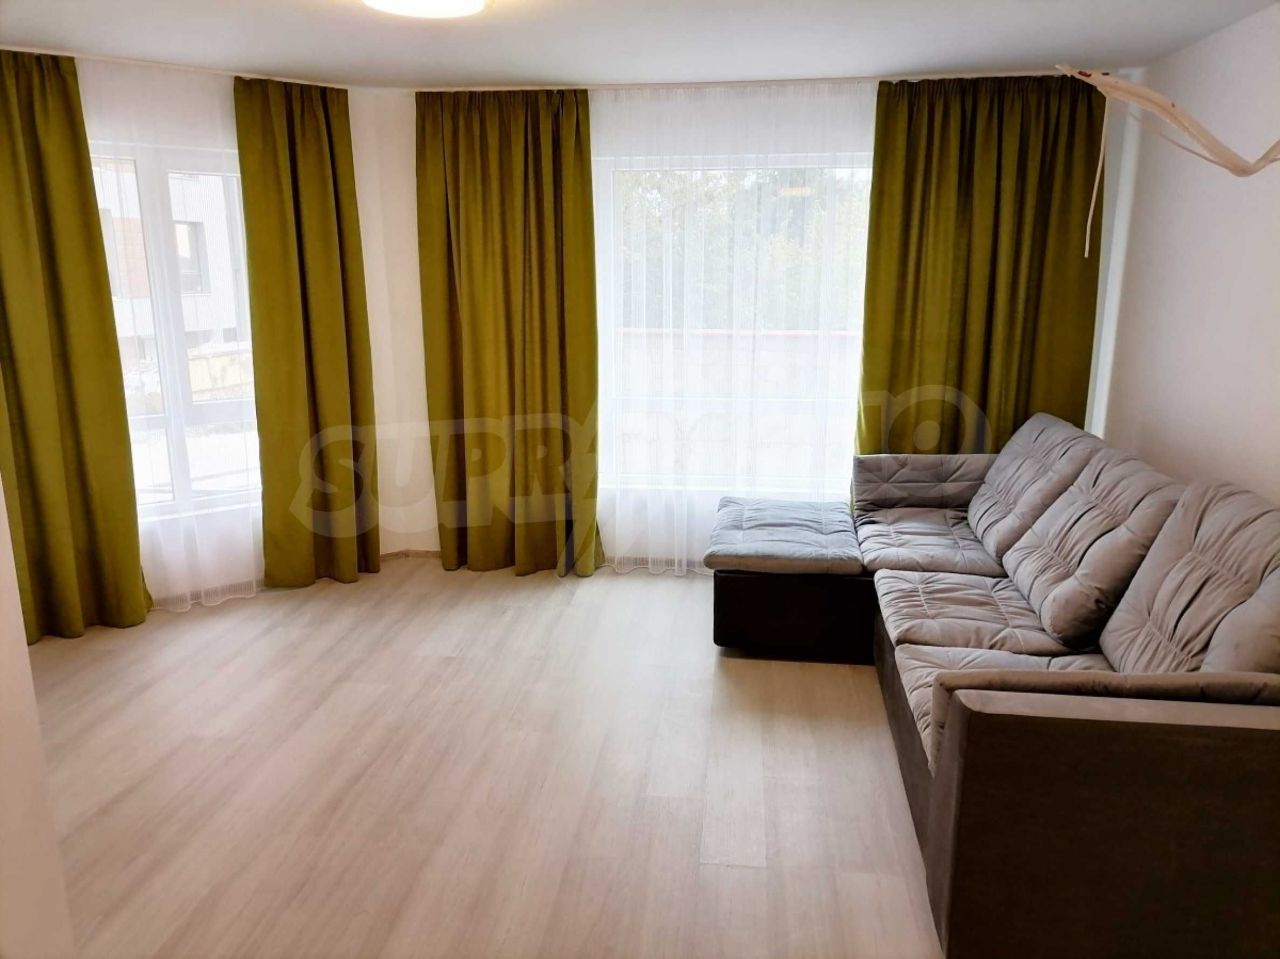 Apartment in Varna, Bulgarien, 79.14 m2 - Foto 1